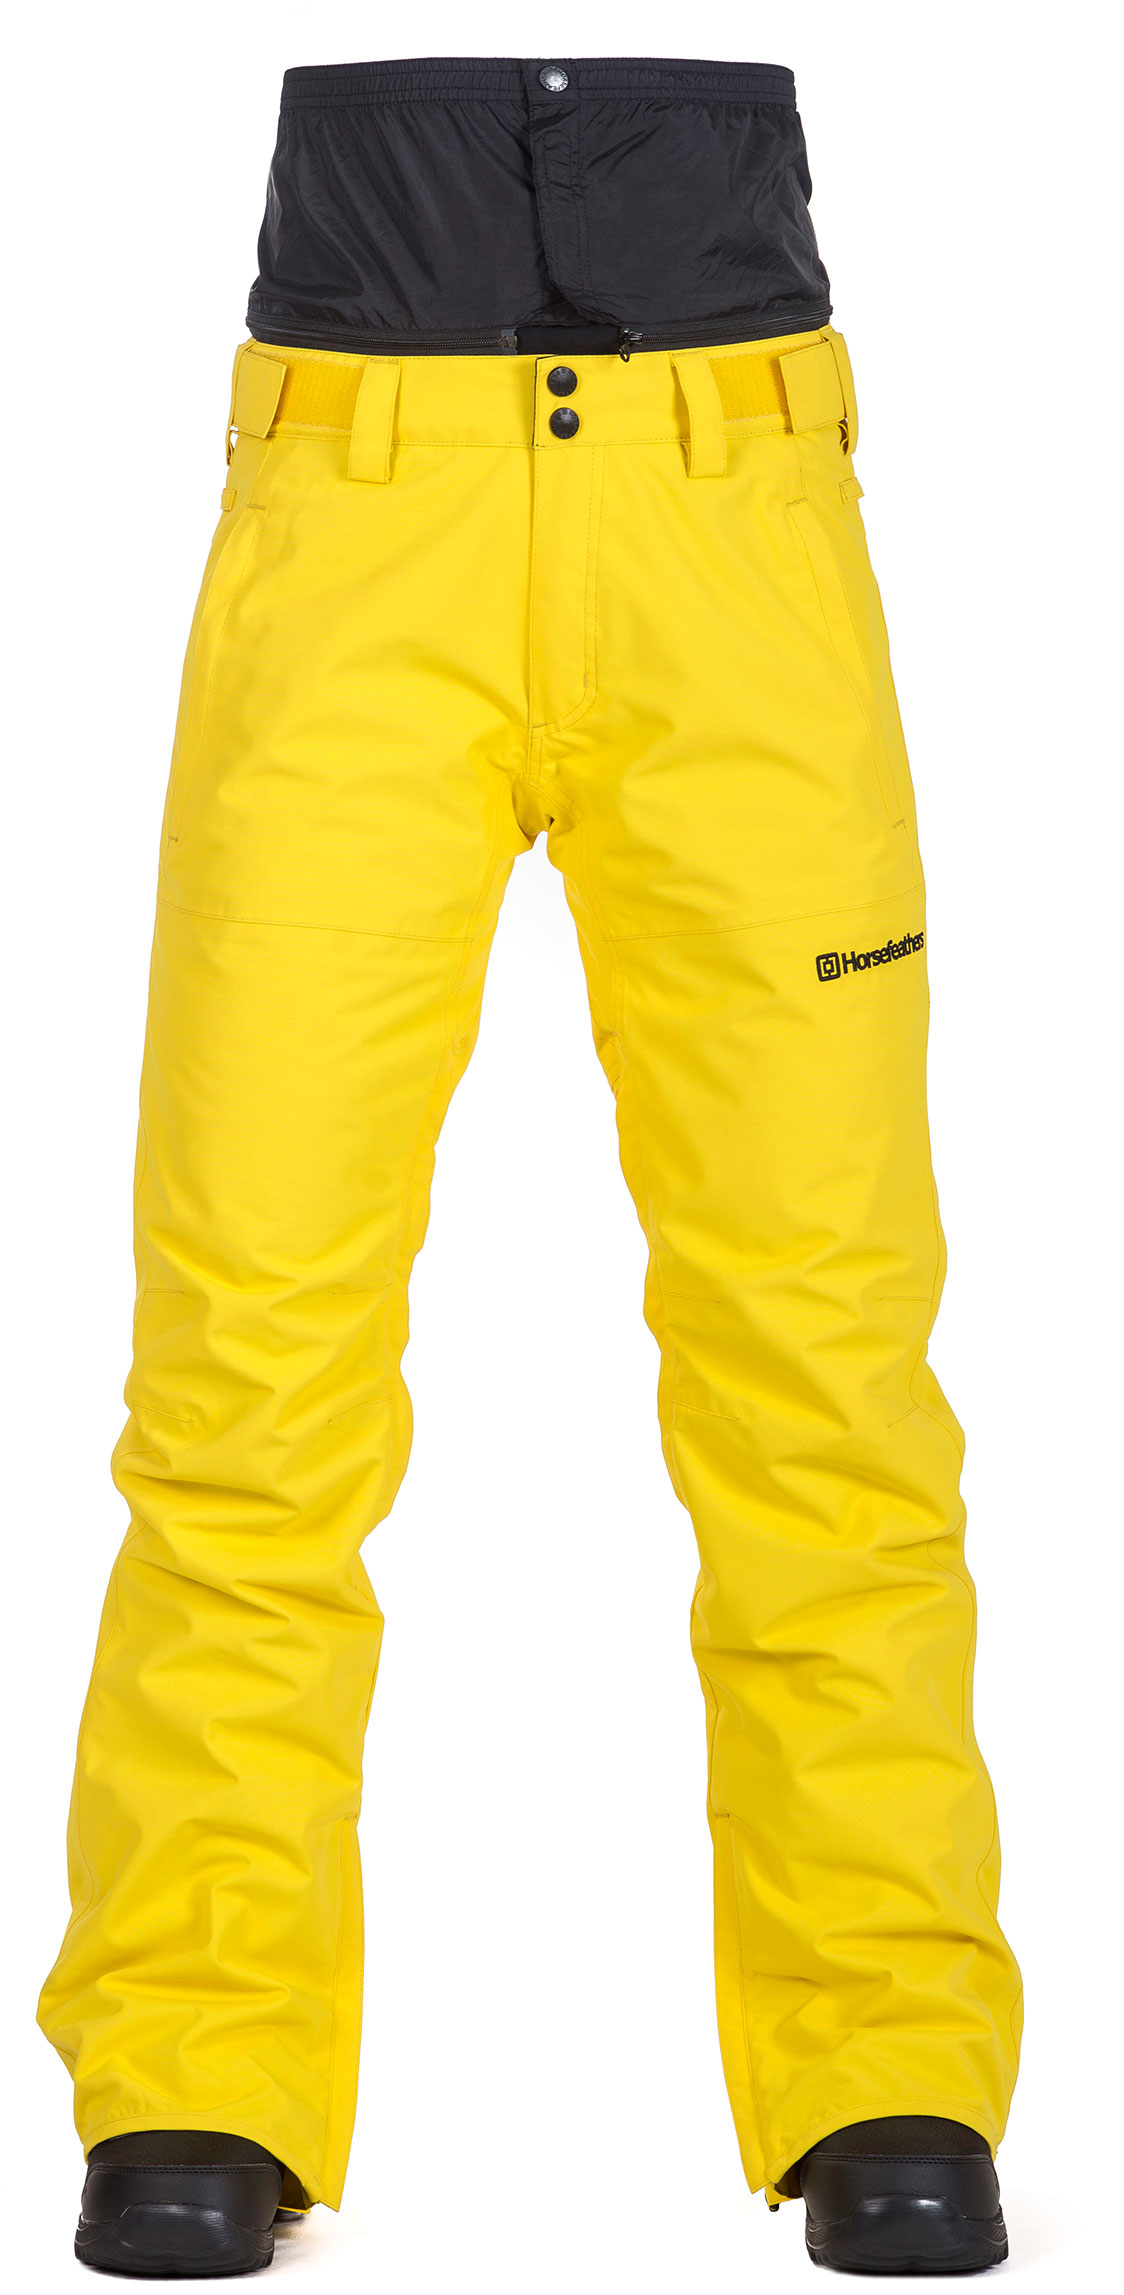 Dámské lyžařské/snowboardové kalhoty